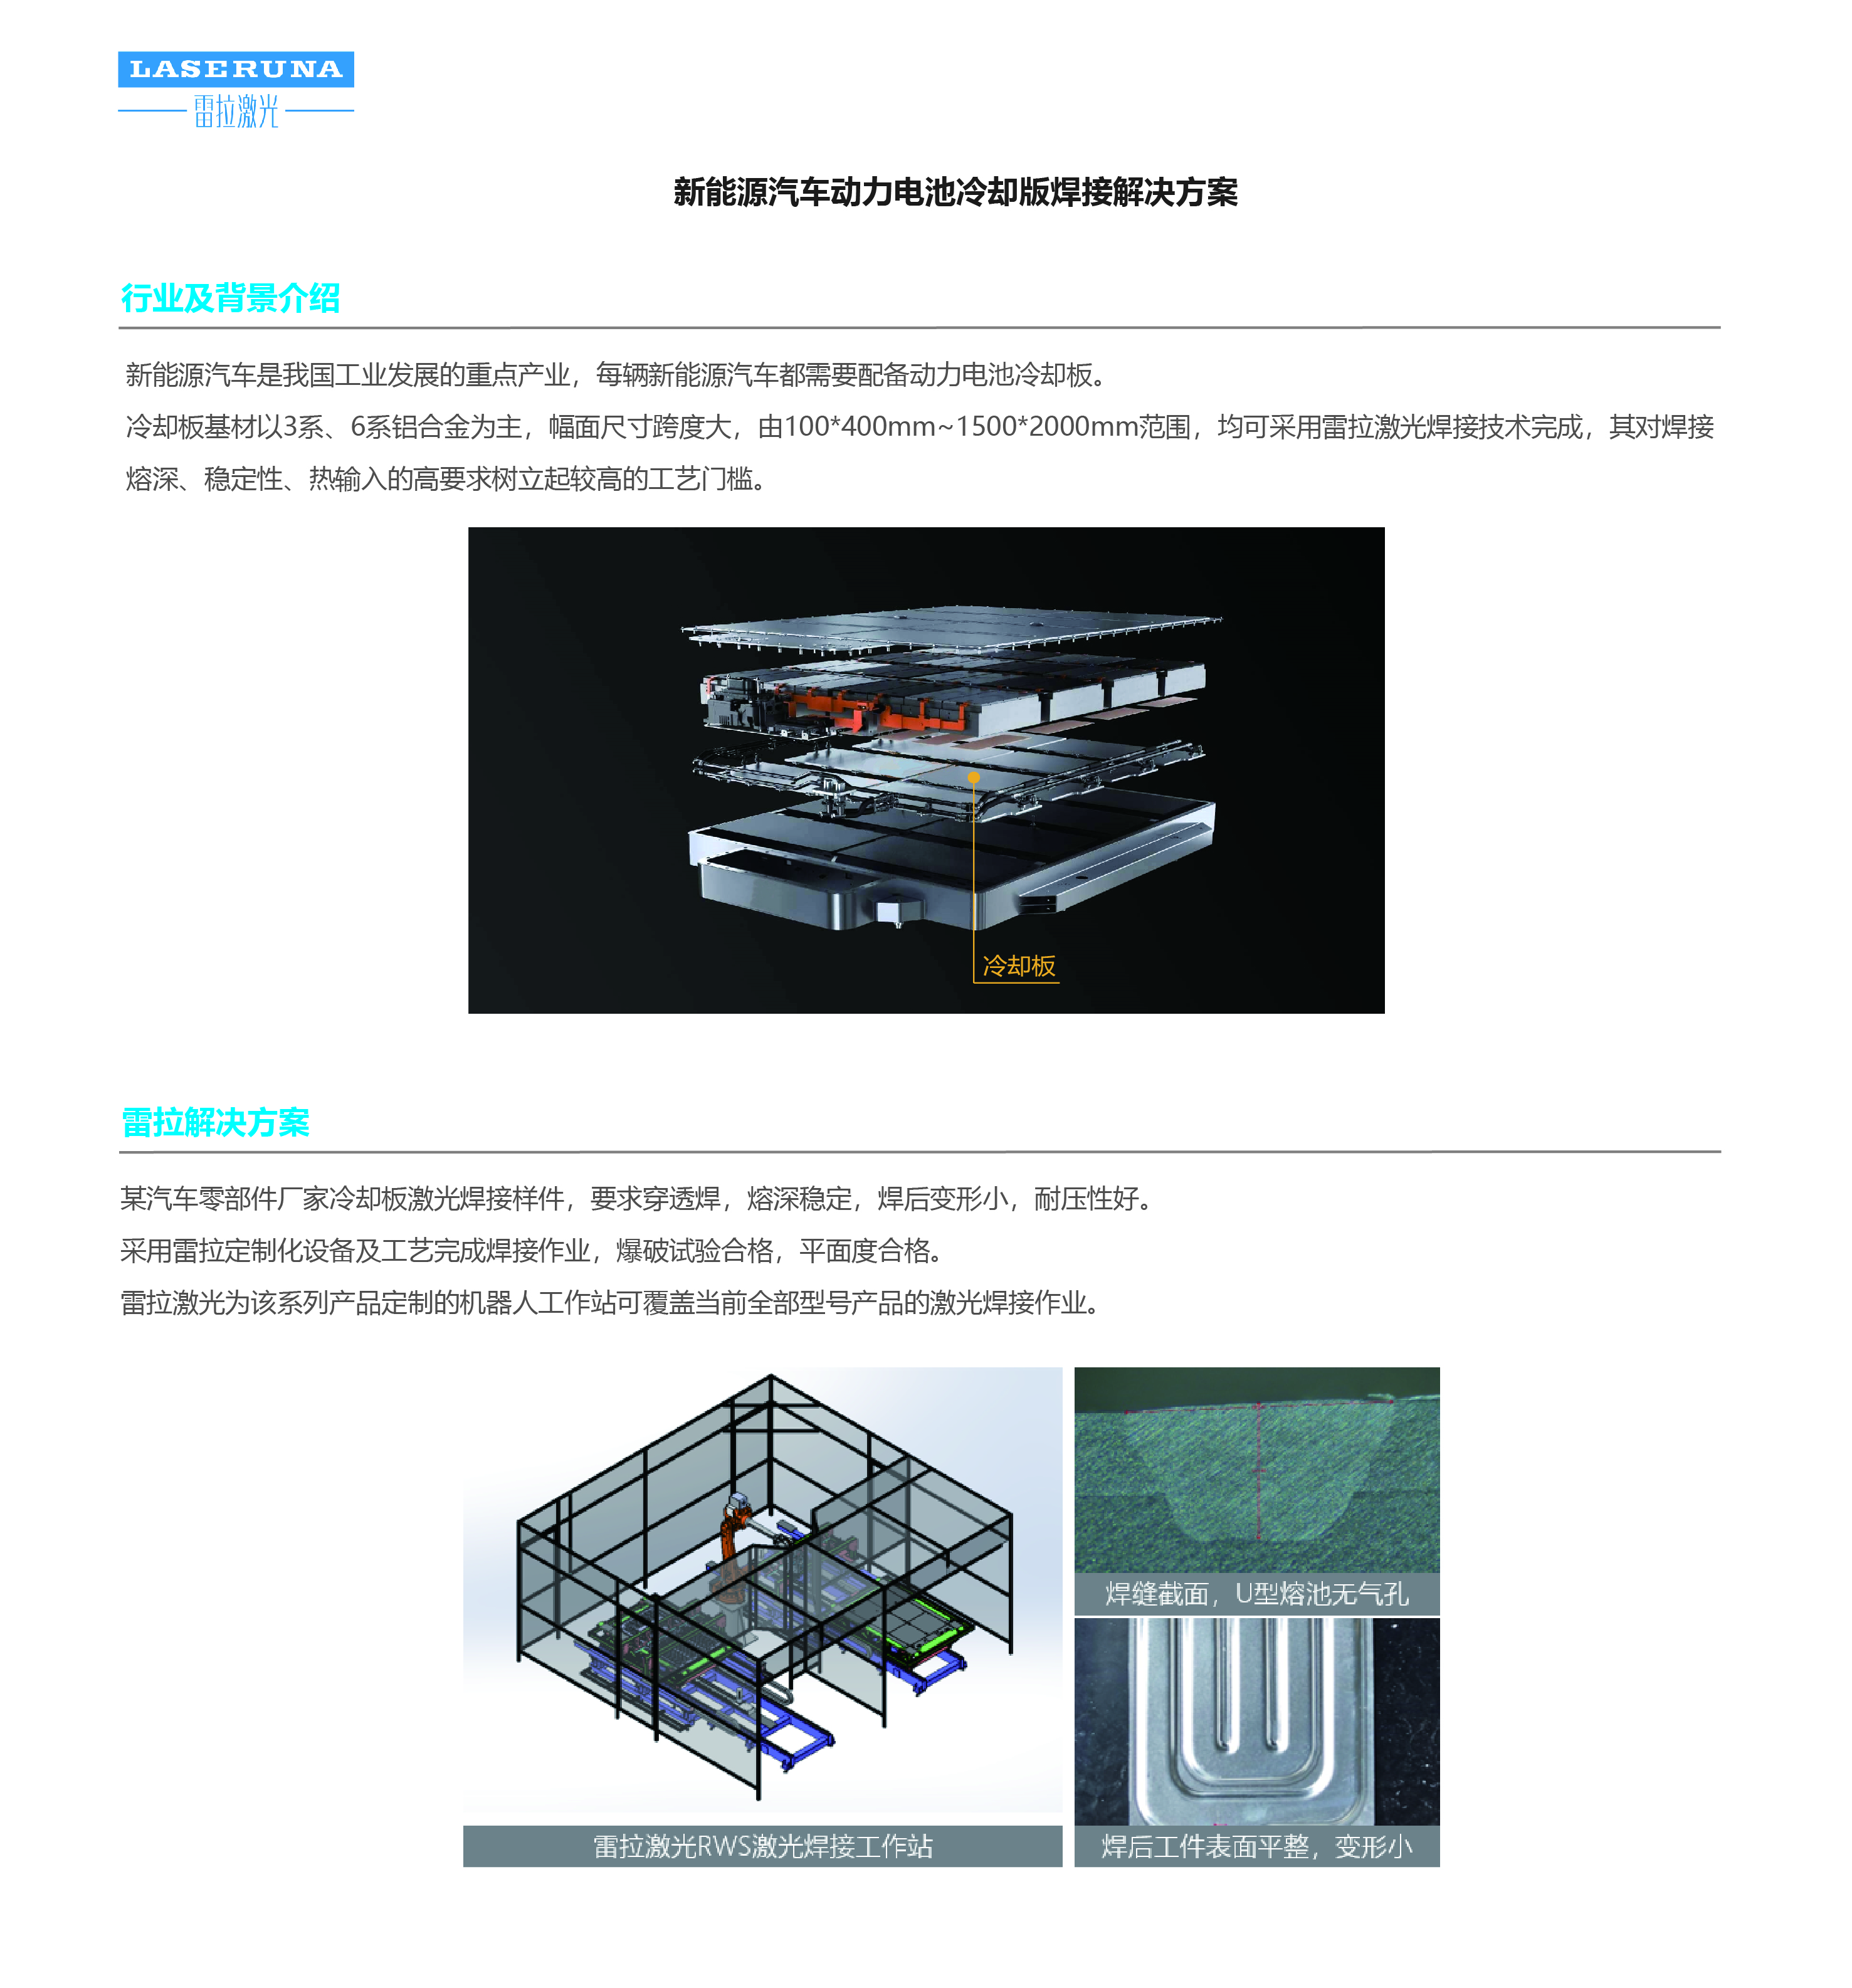 4-新能源汽车_汽车冷却版激光焊接解决方案_20200529_214317925